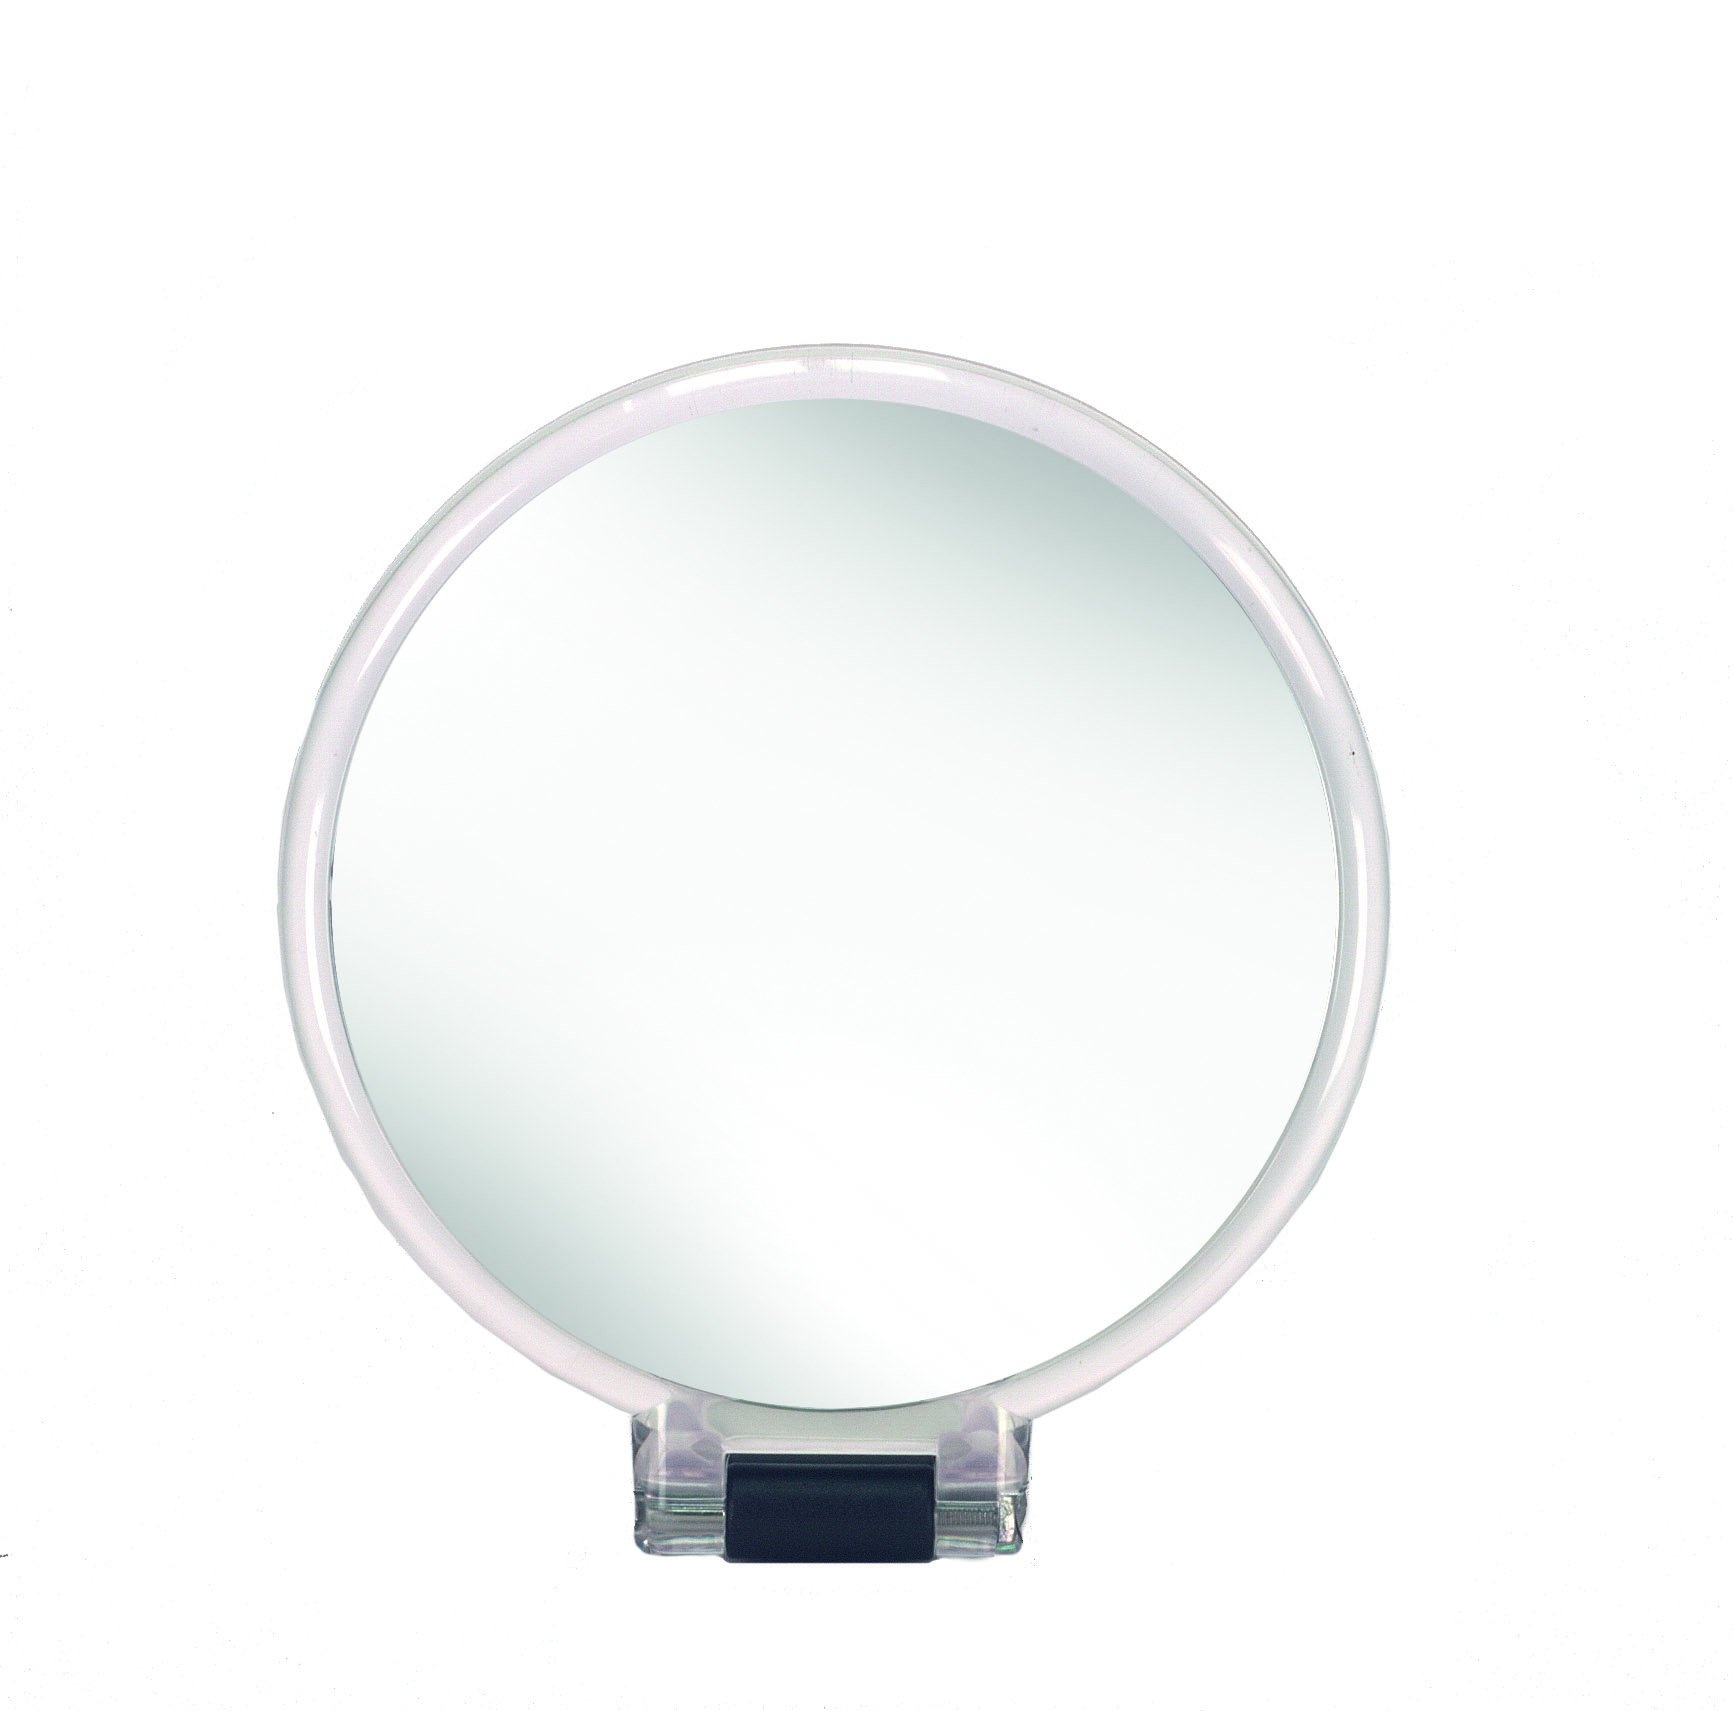 Kleine Wolke Kosmetikspiegel Multi Mirror, mit 5-facher Vergrößerung, Größe: 14 x 24,5 x 1,2 cm, Material: Polystyrol/Glas